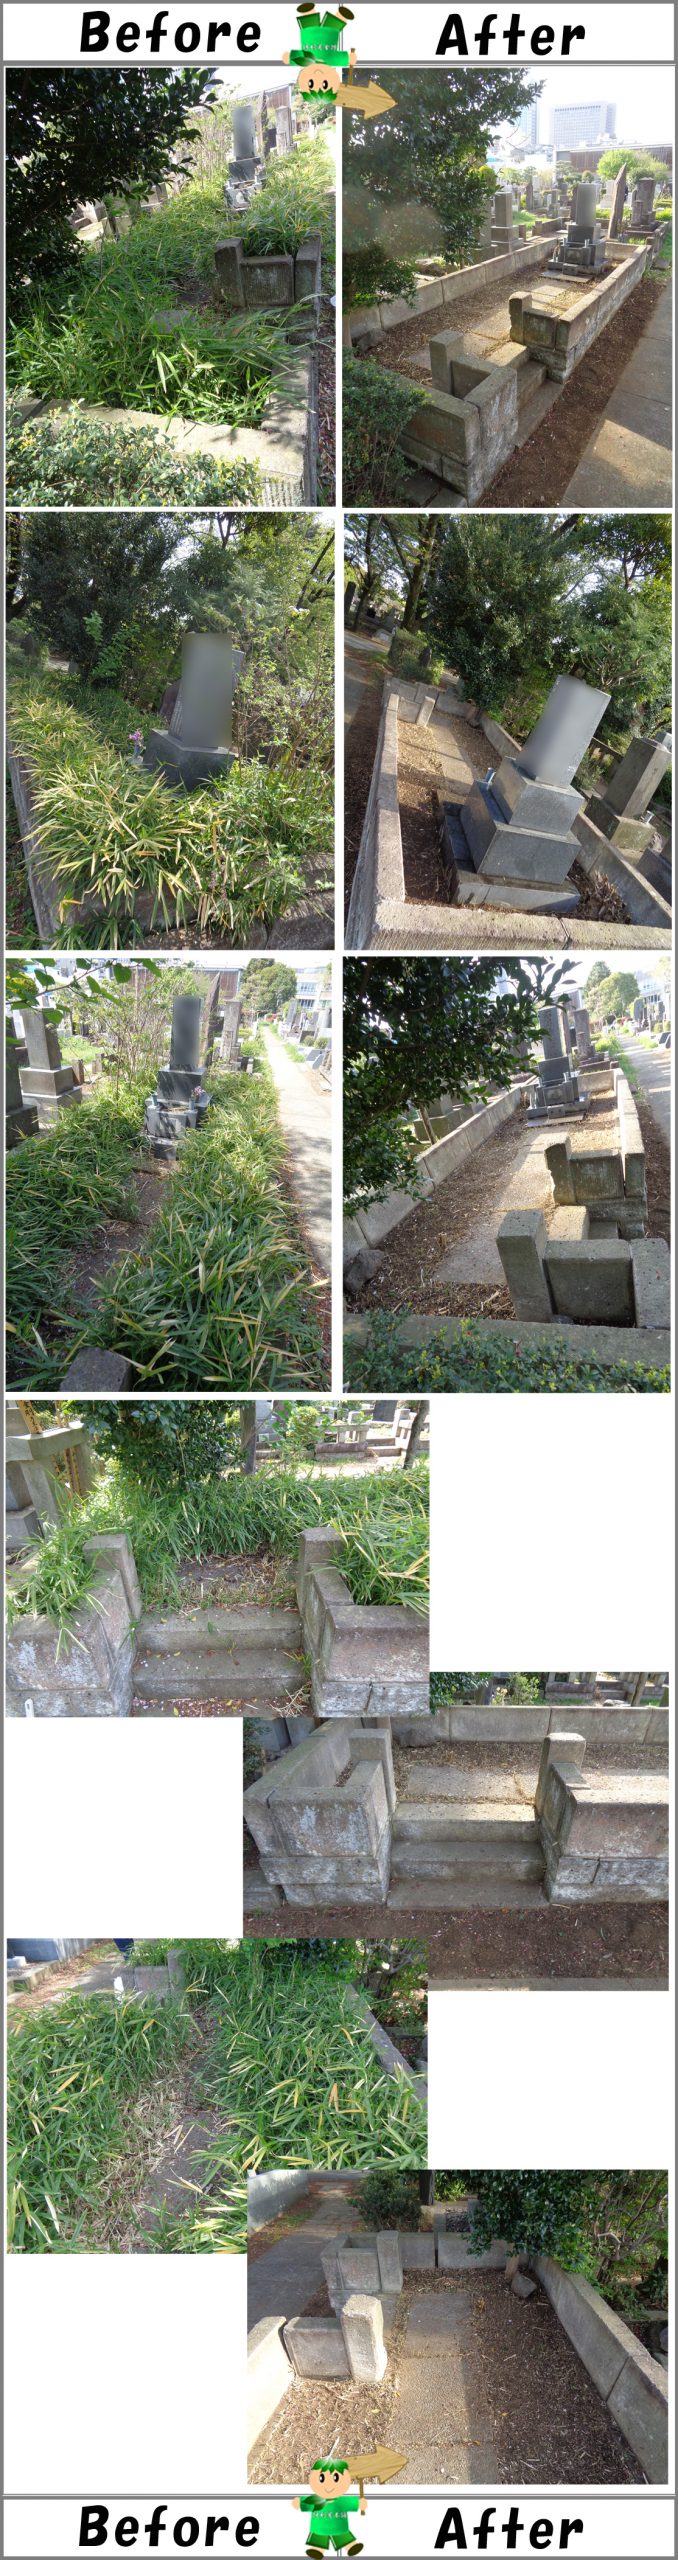 霊園のお墓の笹刈り、草むしり、掃き清掃及び拭き掃除作業写真